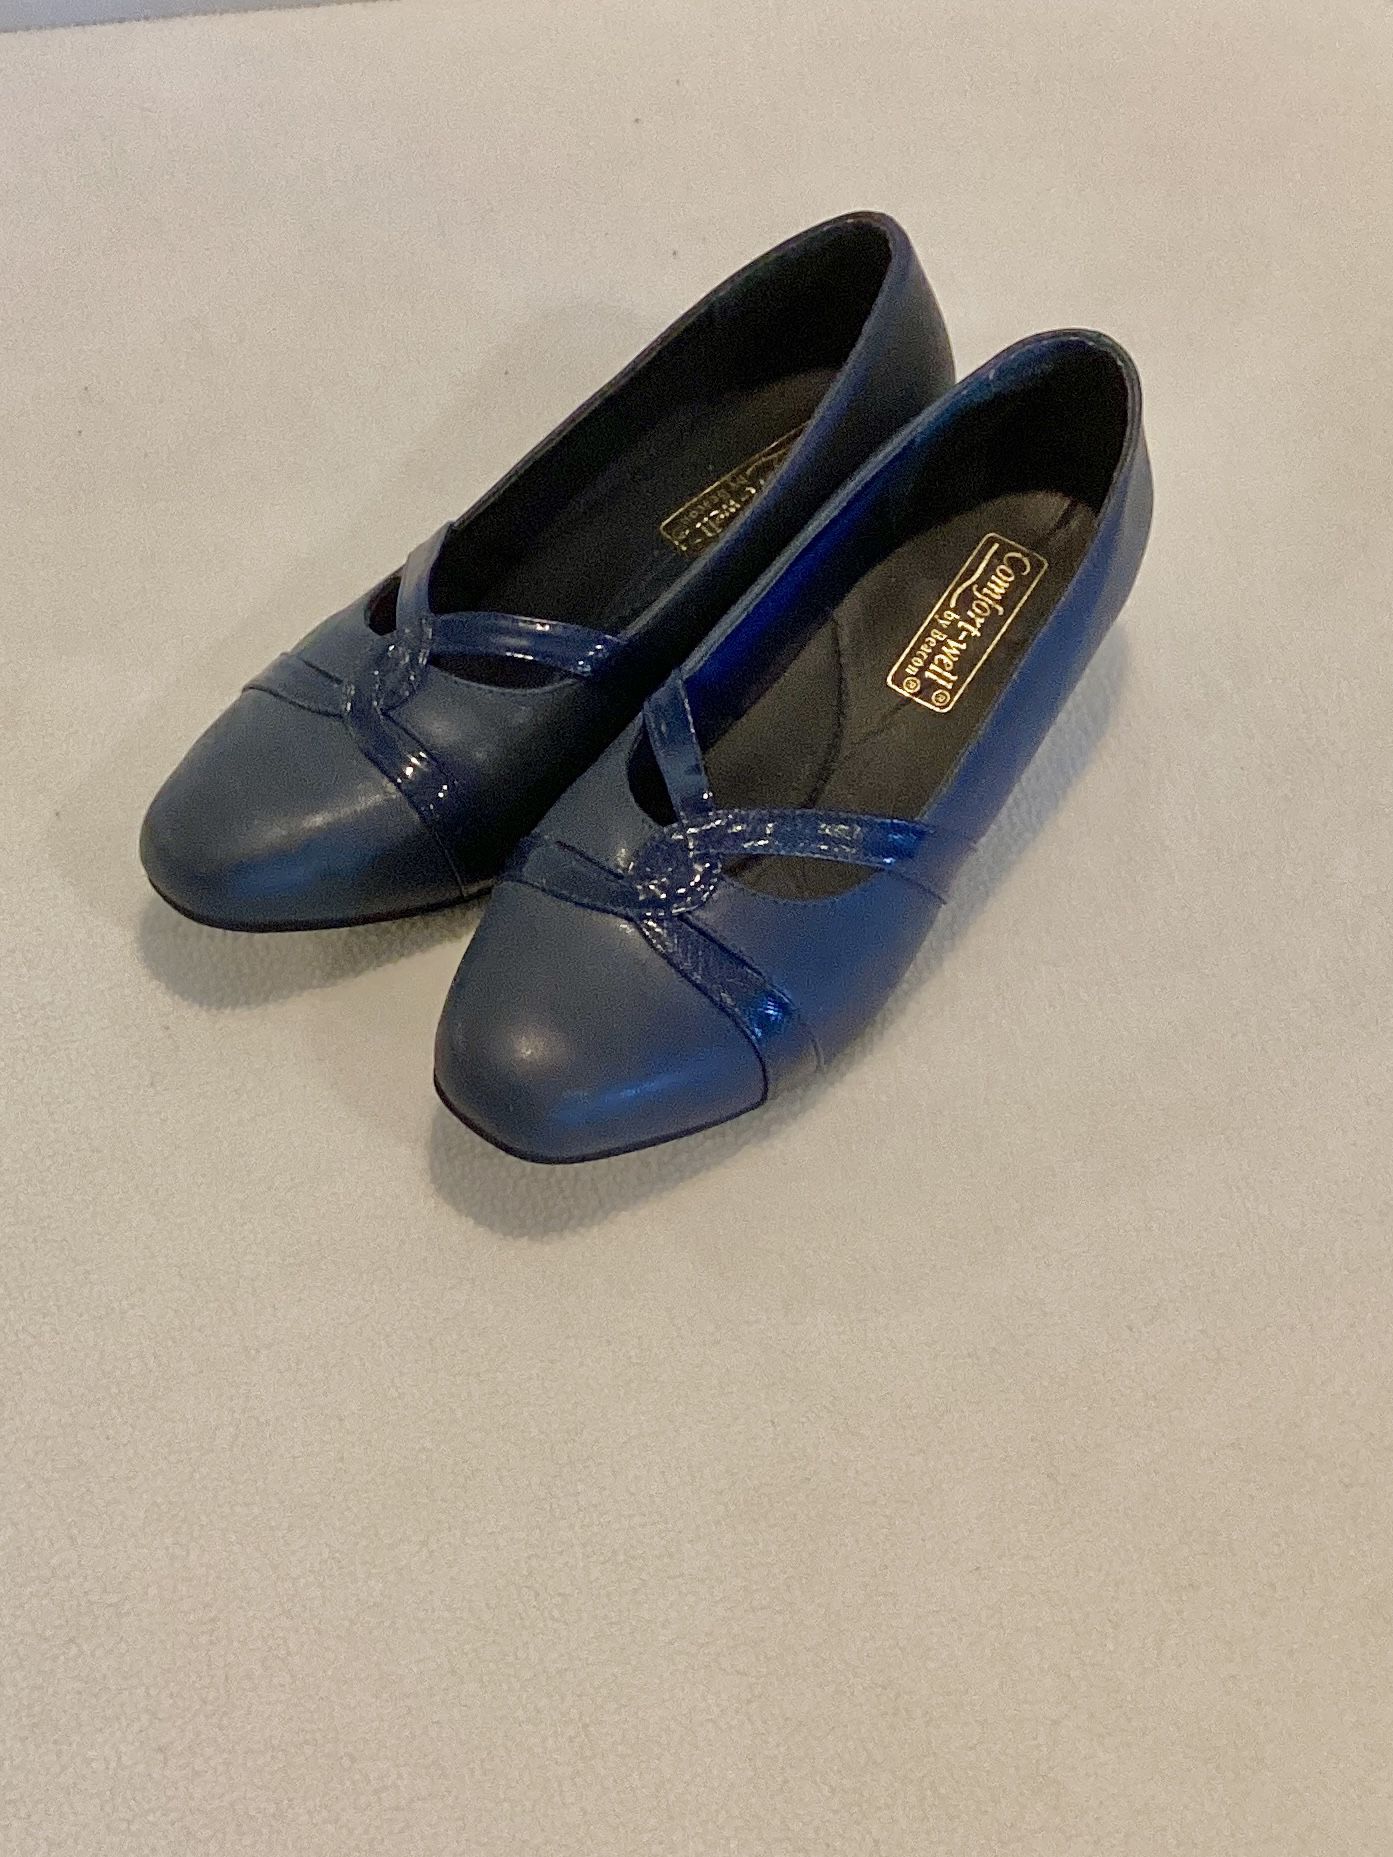 Women’s  Size 9 Wide Heels  Navy Comfort-Well   1  1/2” Heel Shoes Gently Used